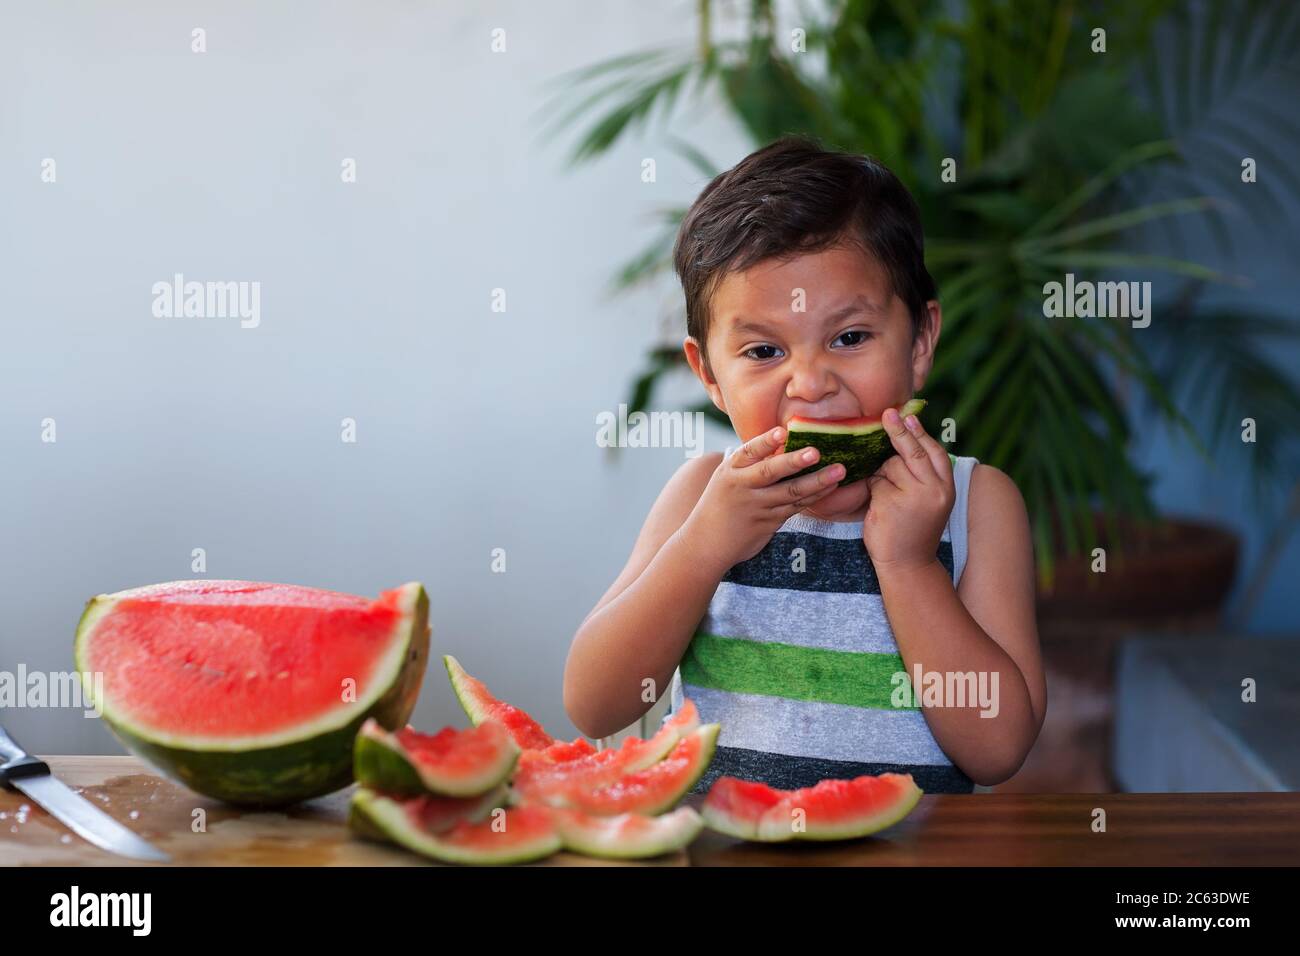 Jeune garçon prenant une morsure d'une tranche de pastèque qu'il tient à sa bouche pendant l'été. Banque D'Images